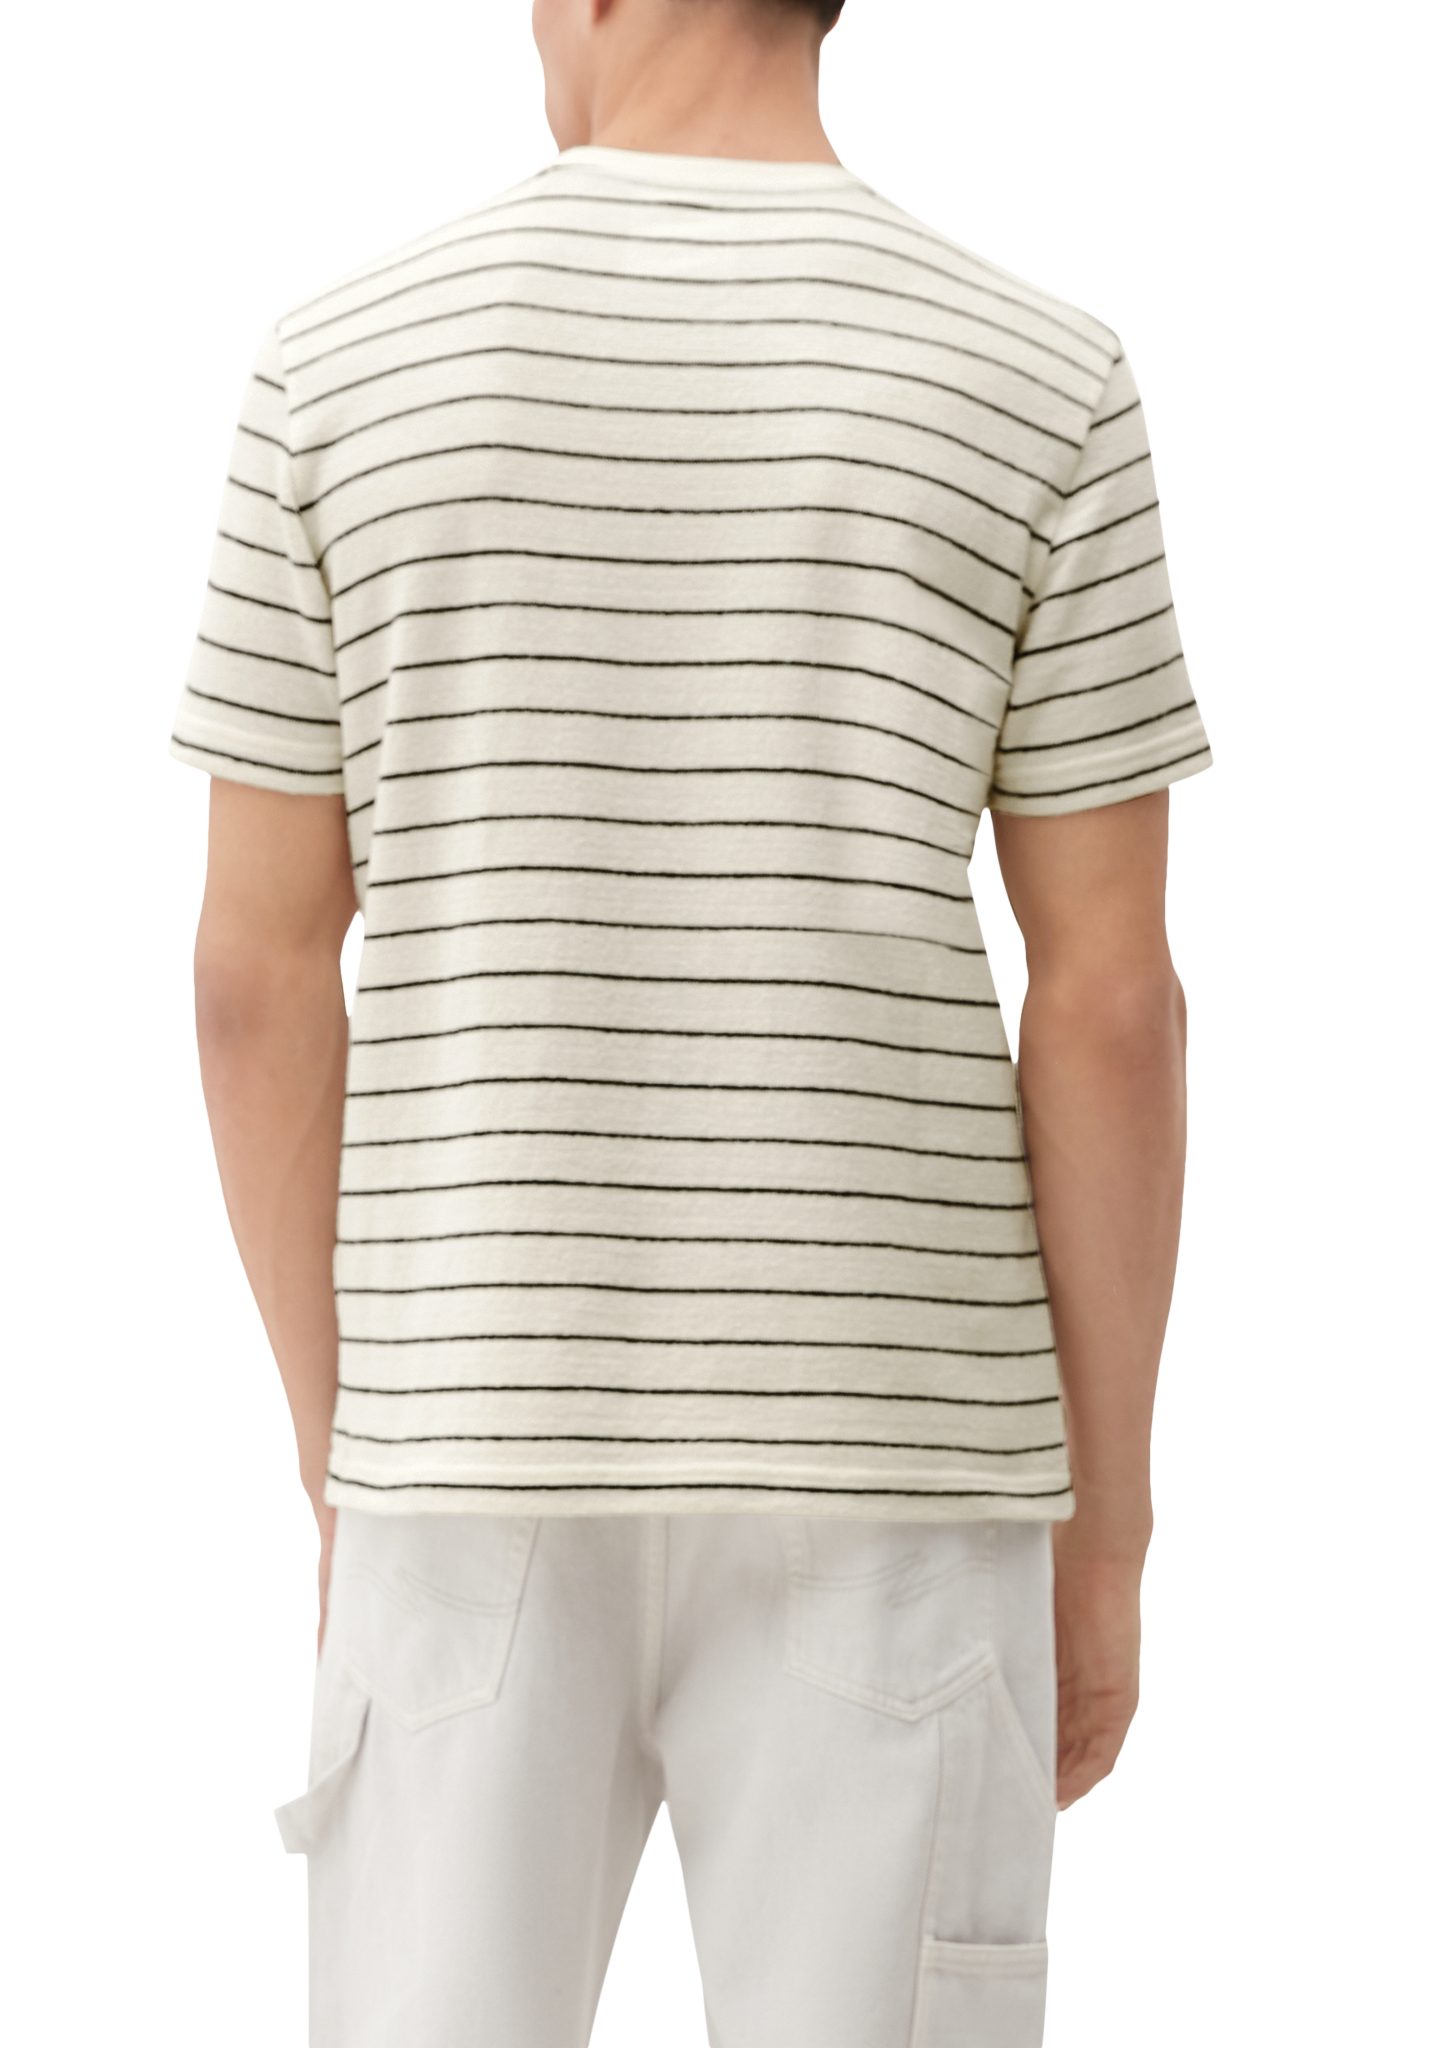 T-Shirt Baumwoll-Frottee helles QS Kurzarmshirt aus Label-Patch beige